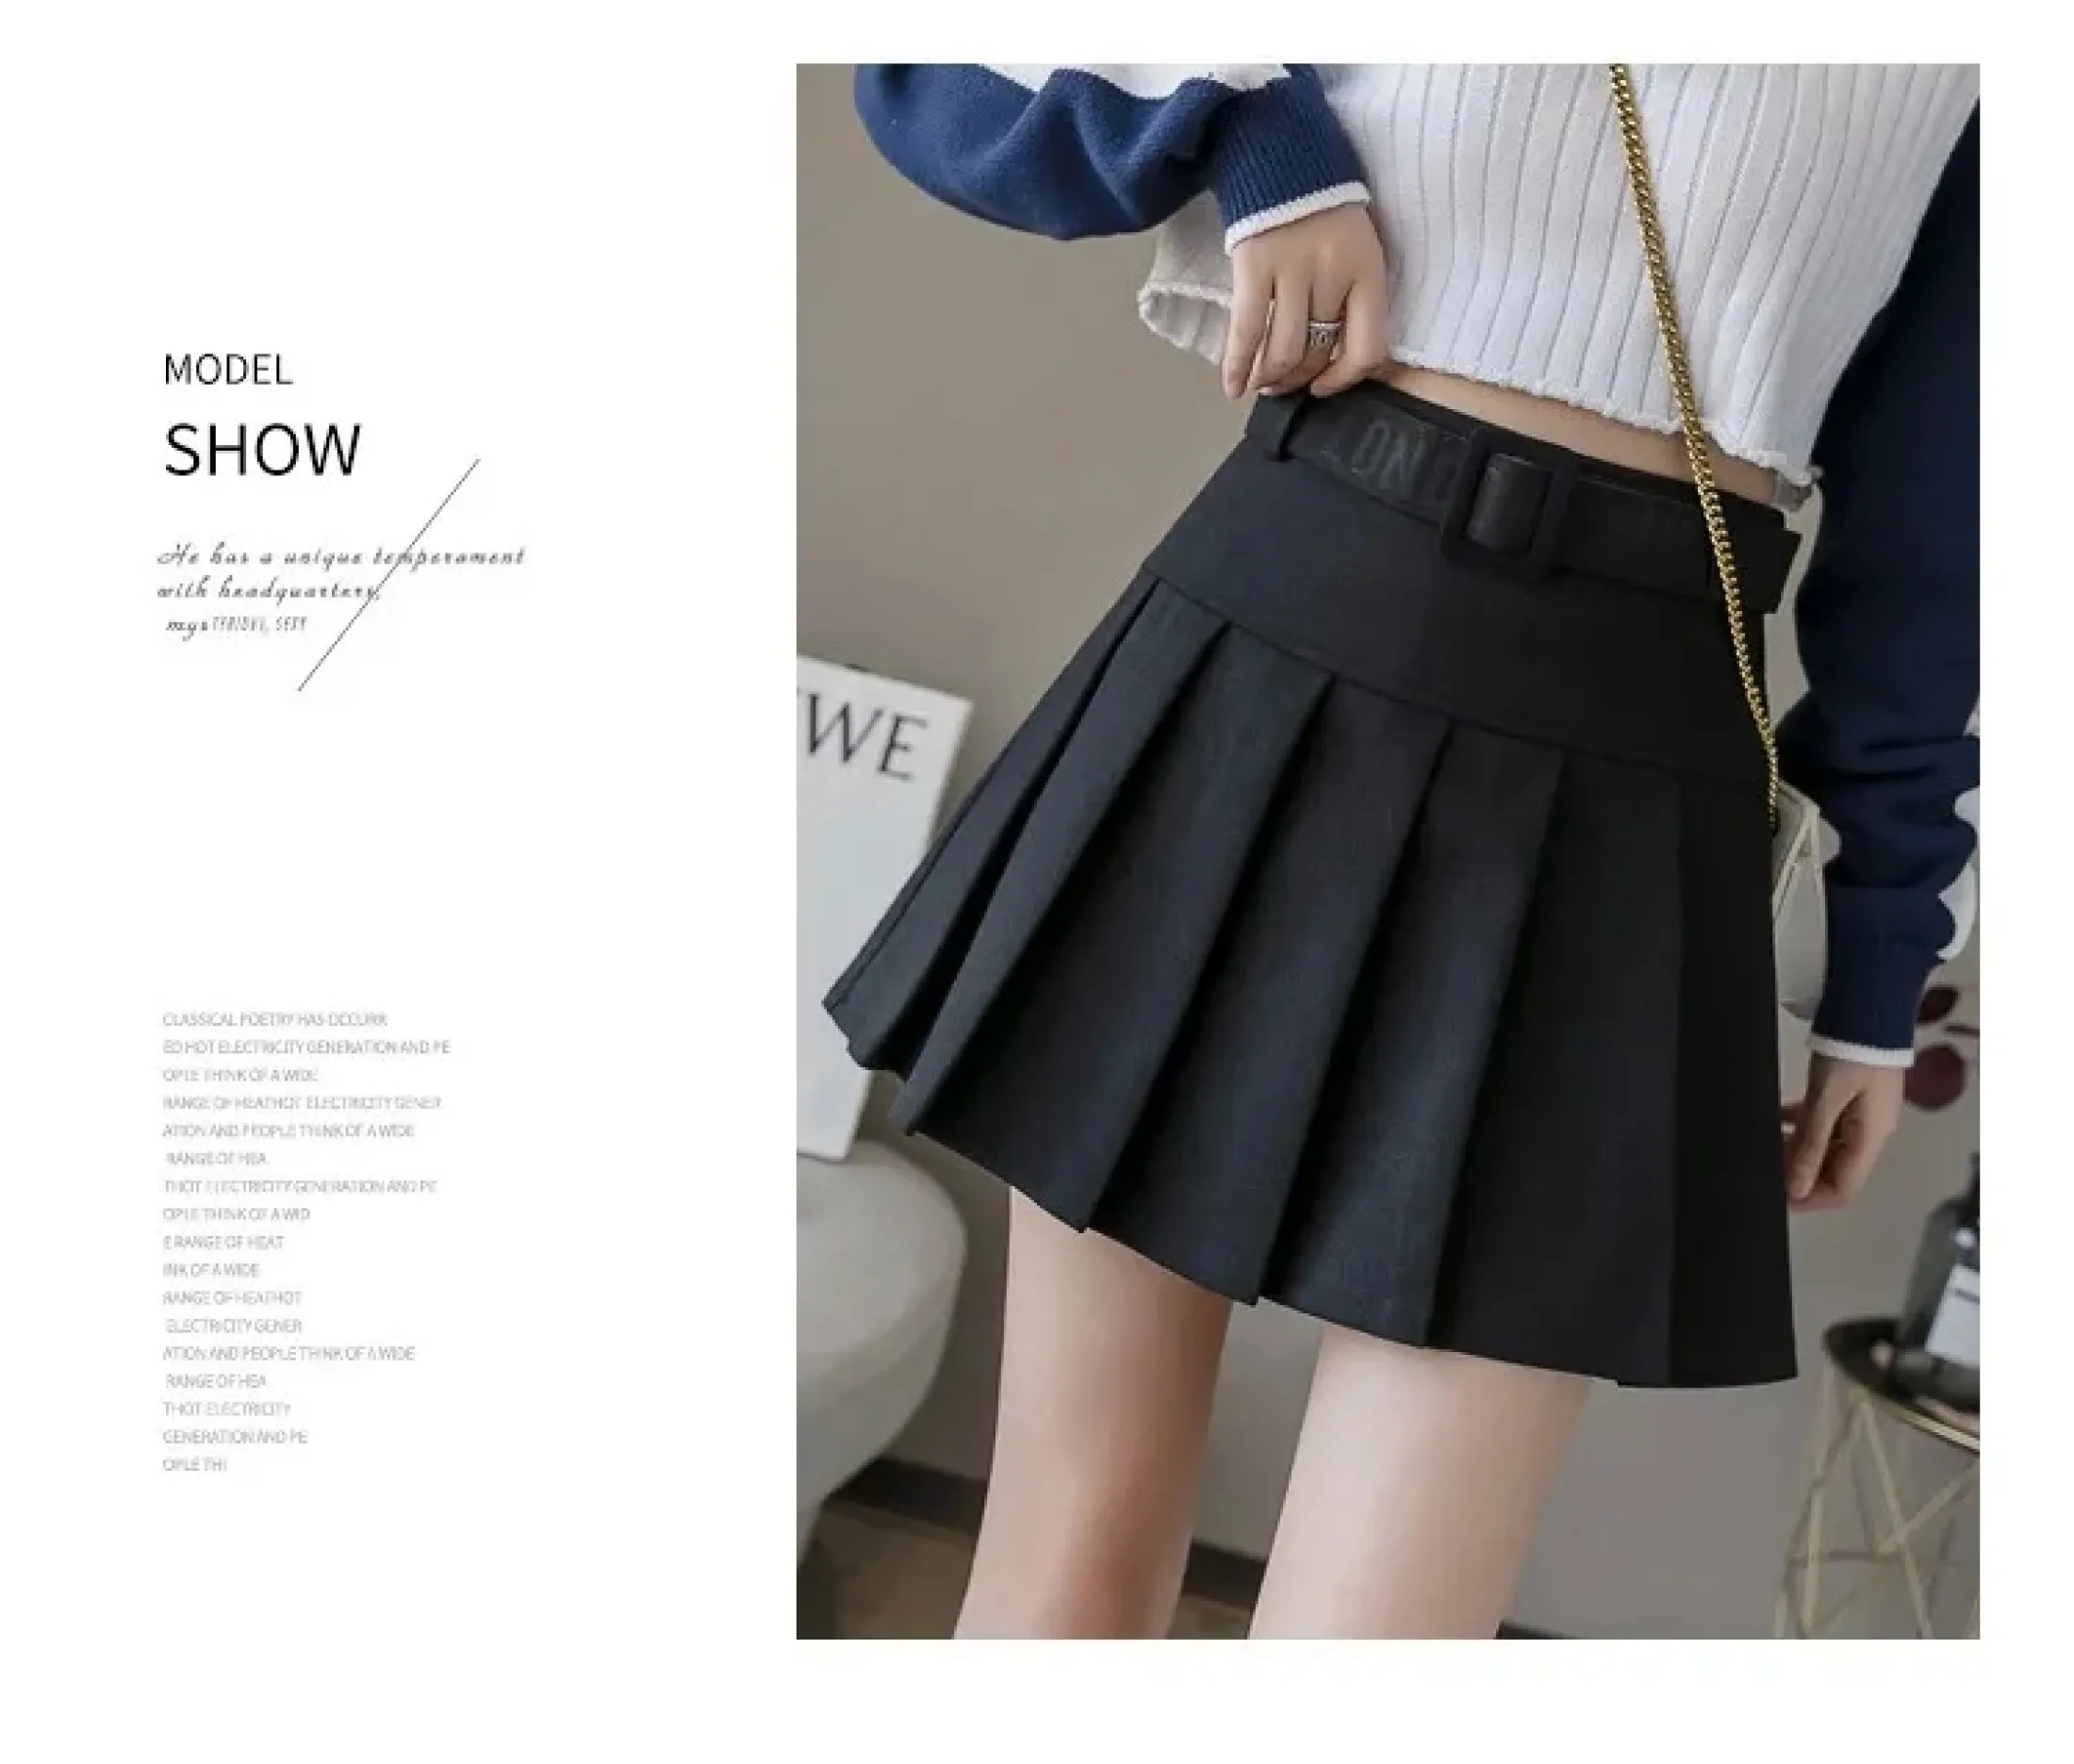 Thot Skirt